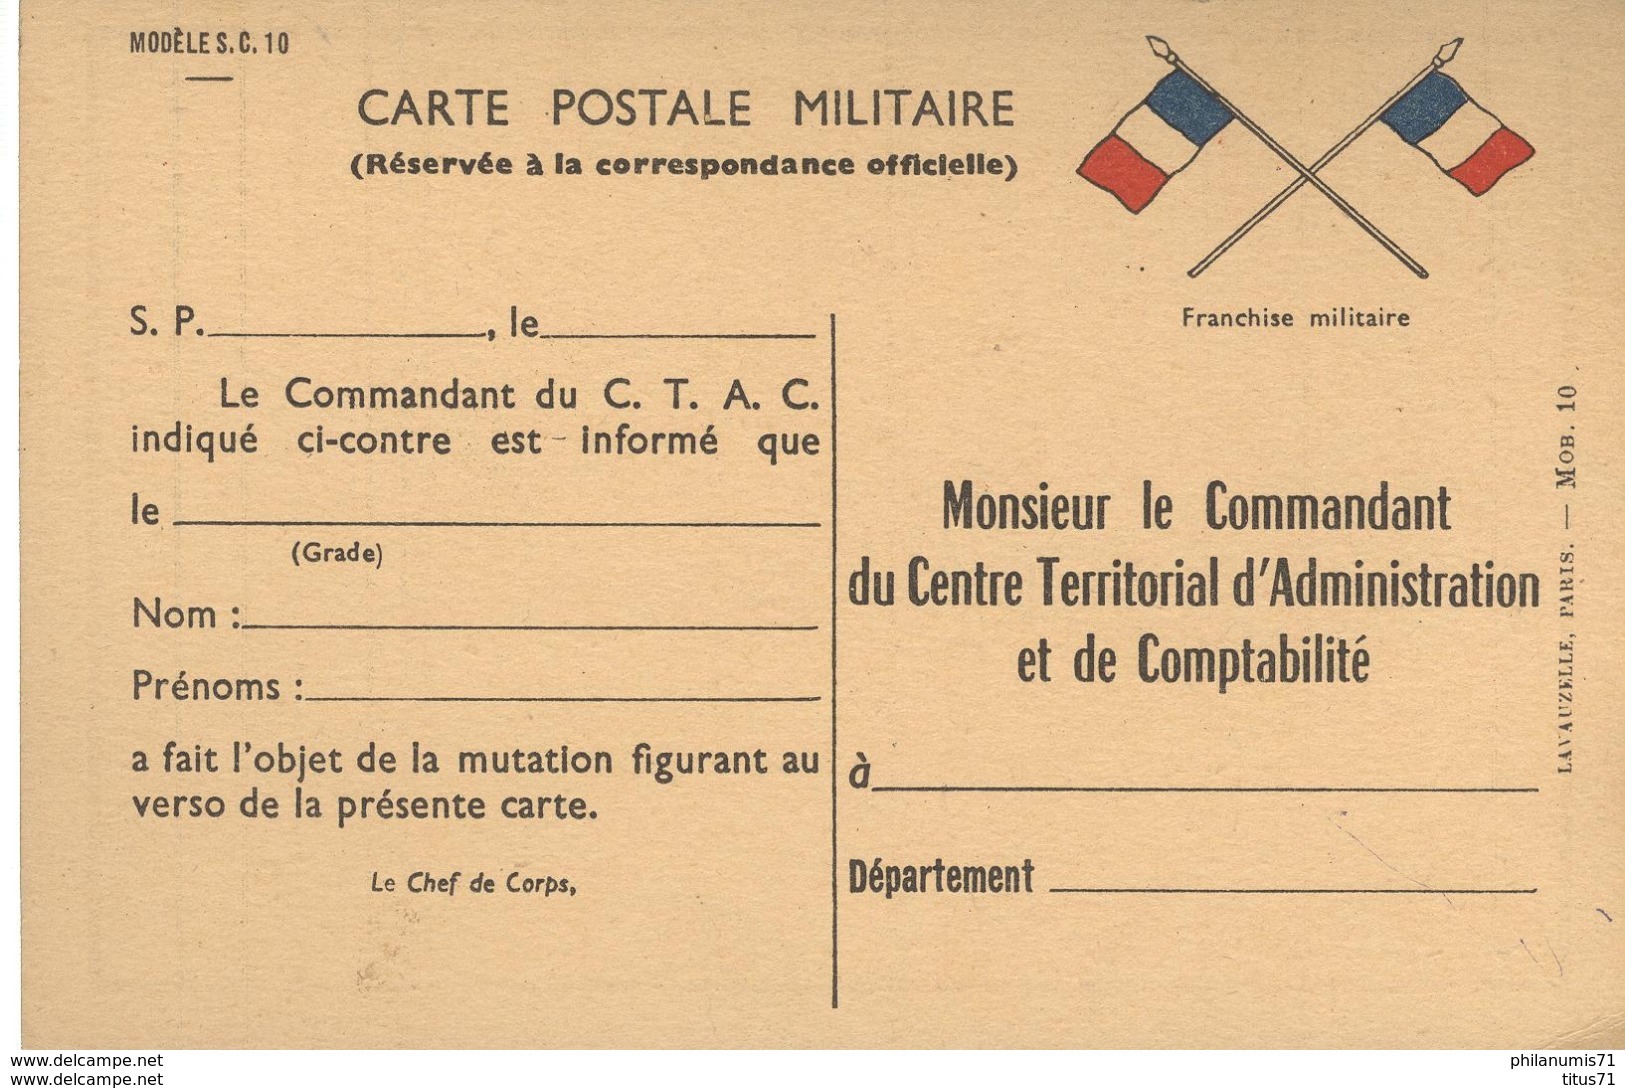 Carte Postale Militaire Réservée à La Correspondance Officielle - Modèle S.C. 10 - Non Circulée - Timbres De Franchise Militaire